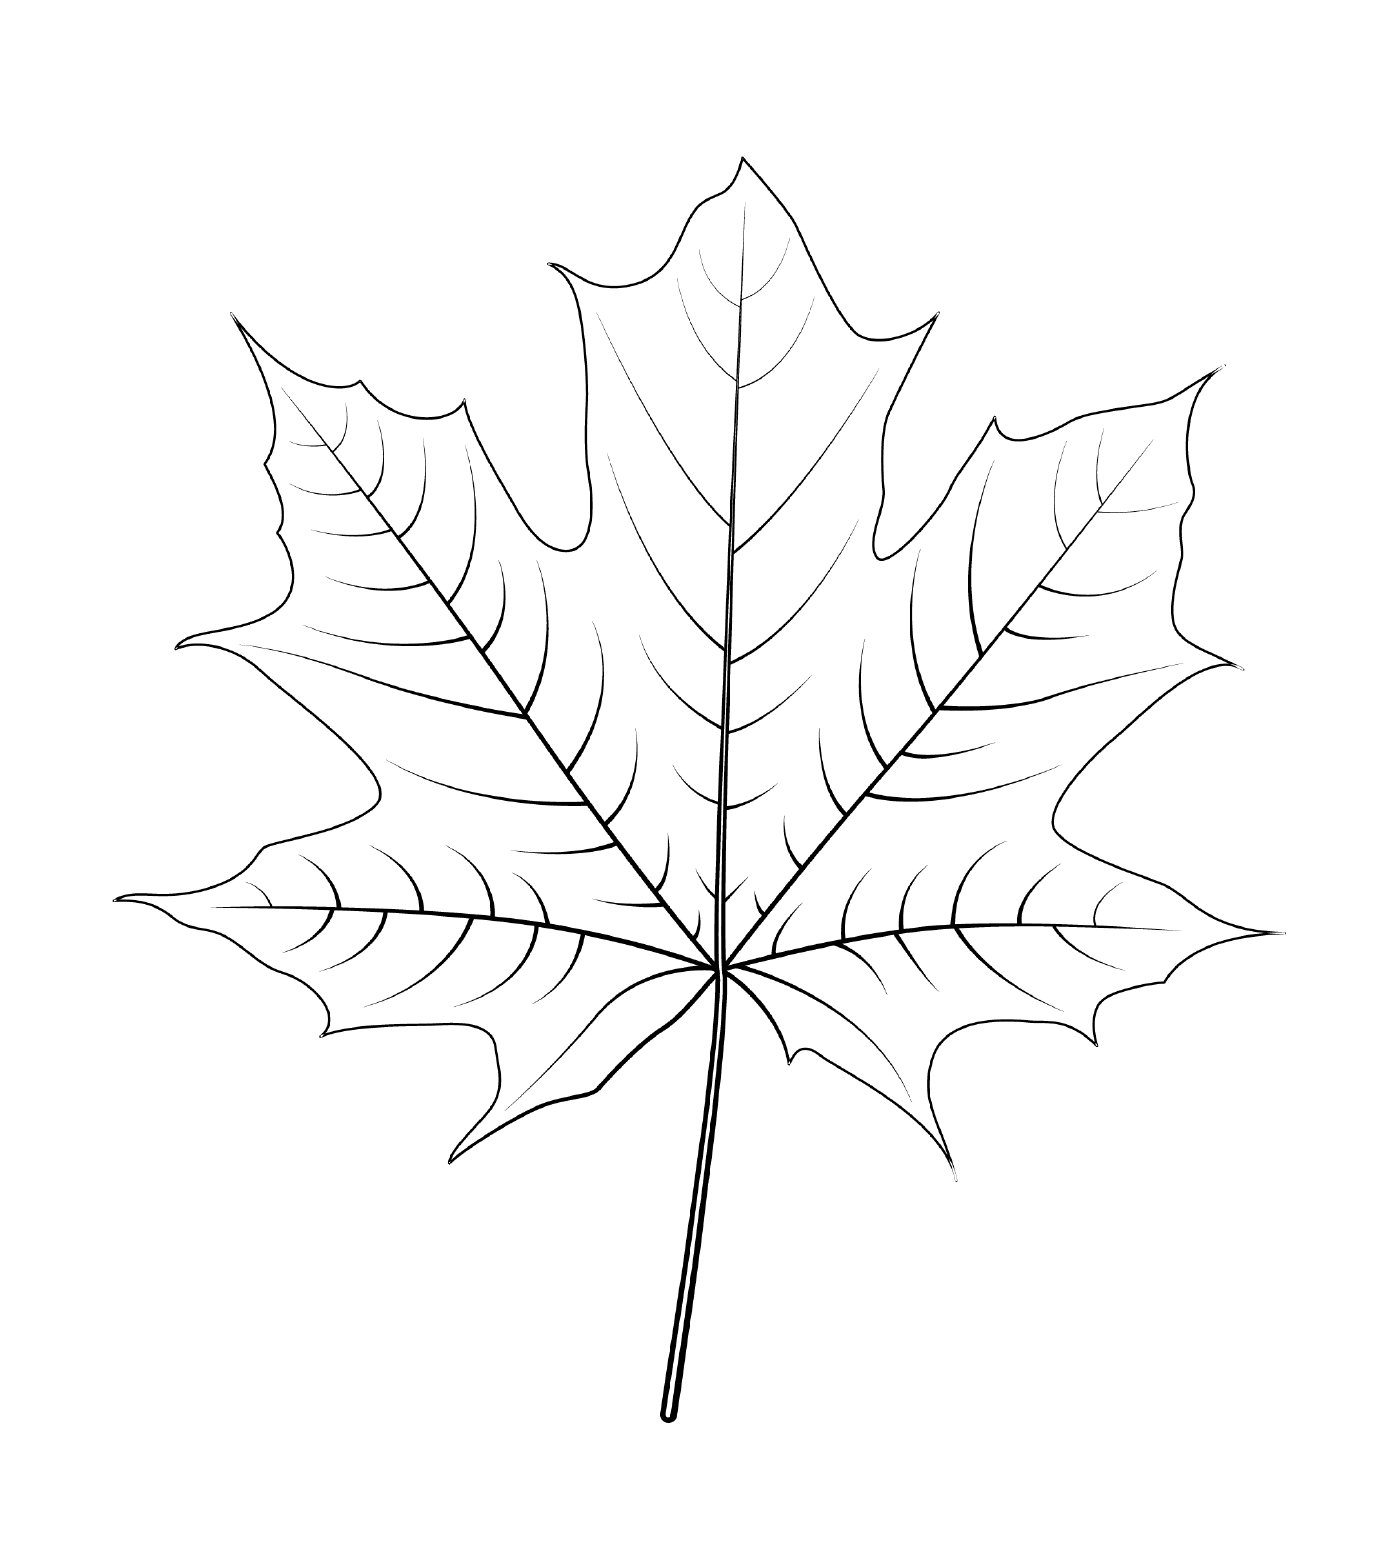  Норвежский кленовый лист 